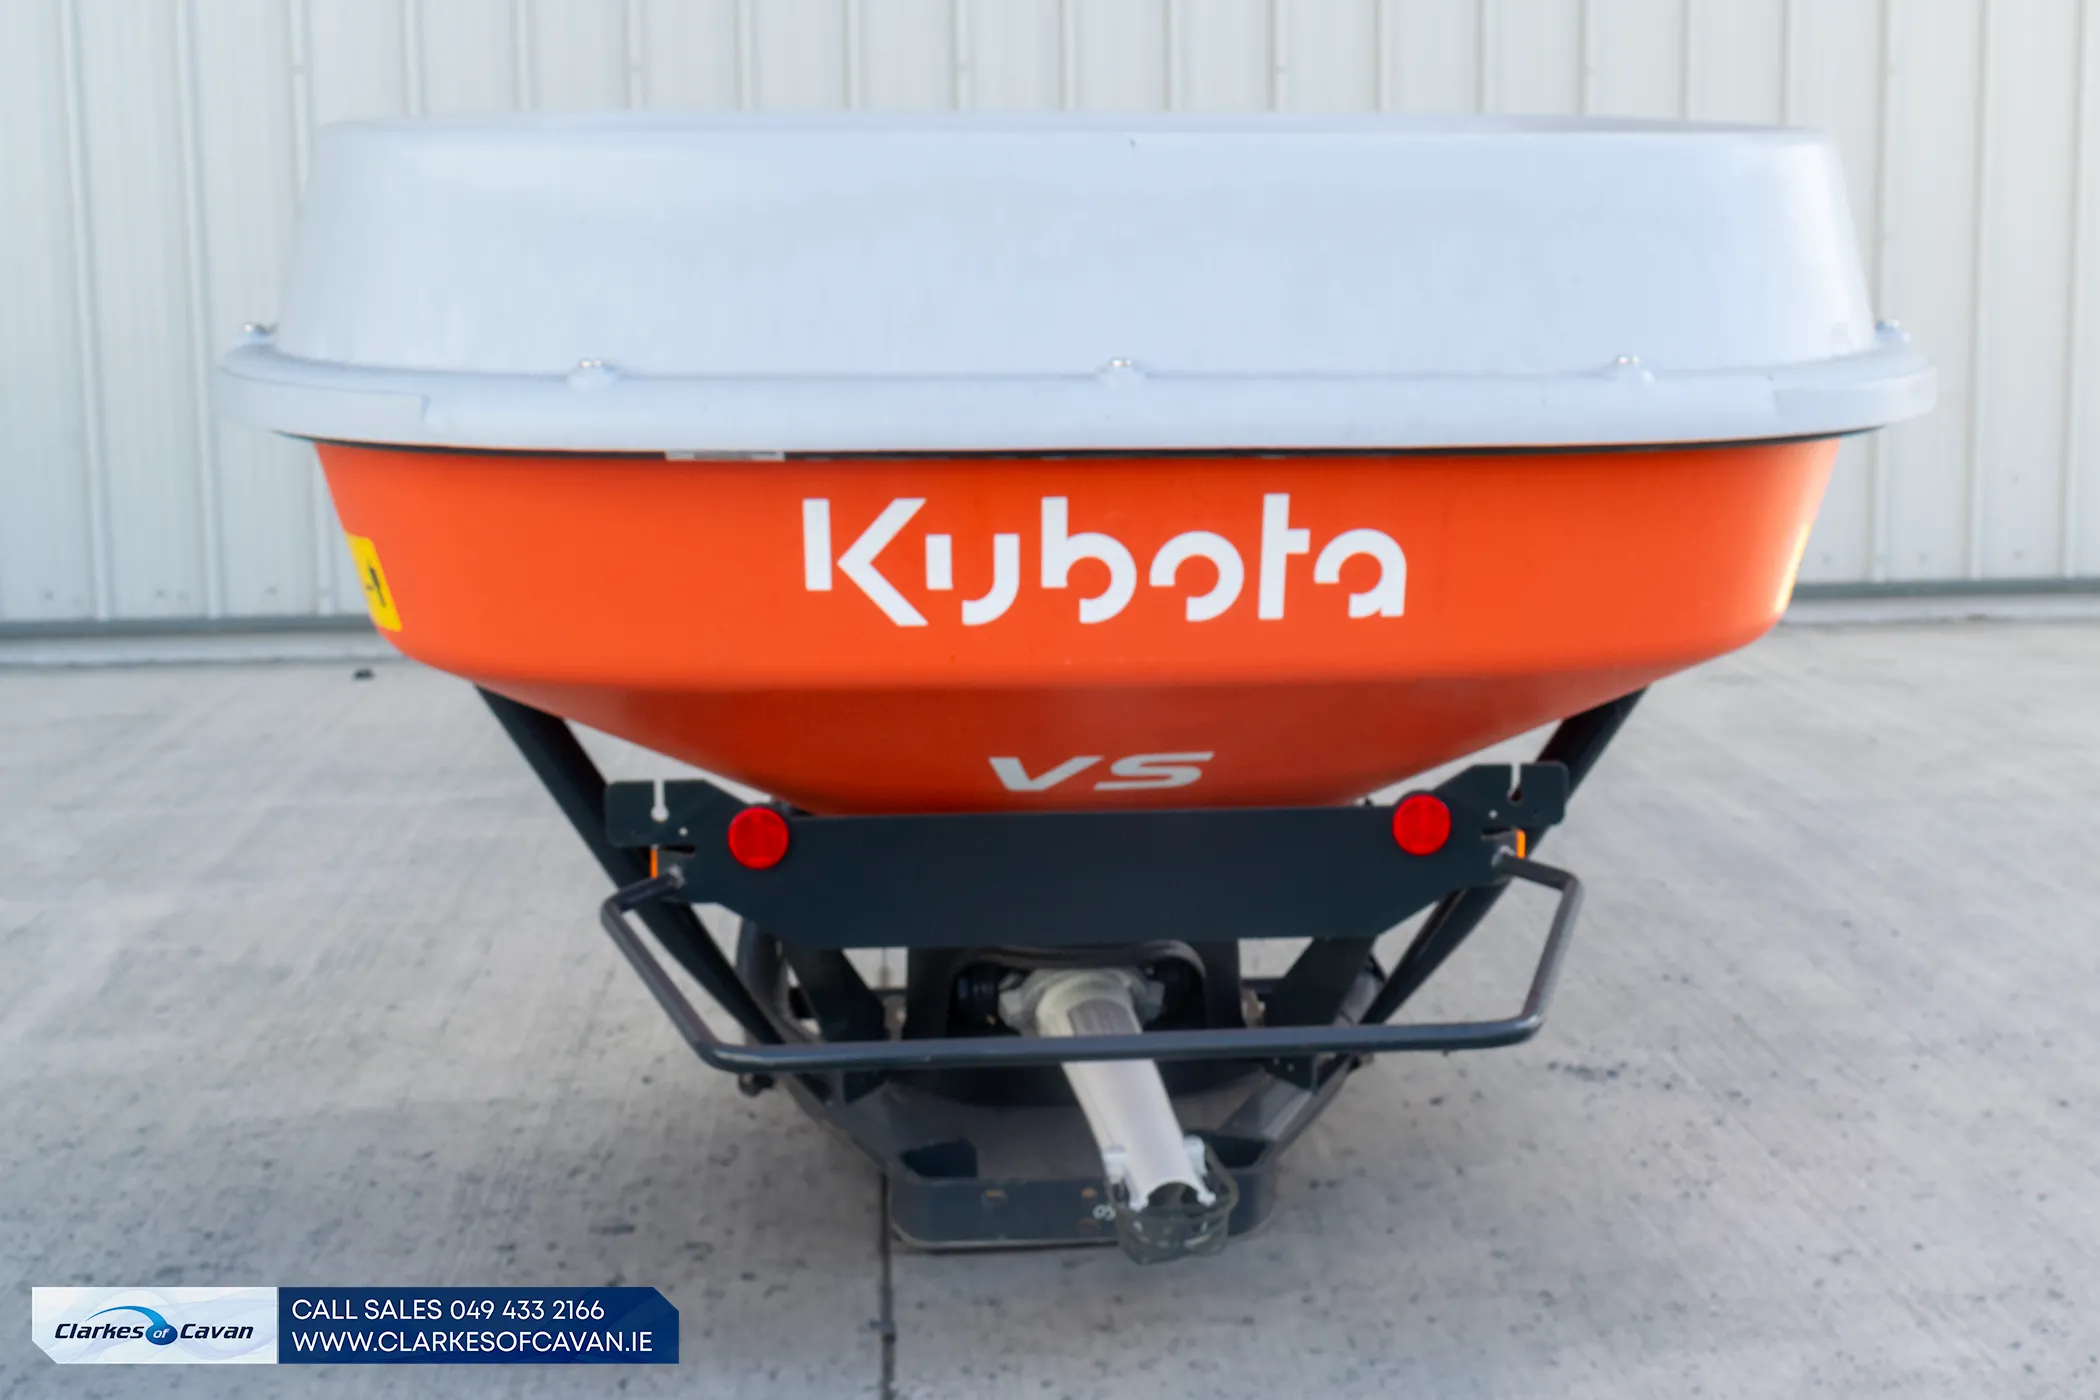 Kubota VS1150 Fertiliser Spreader